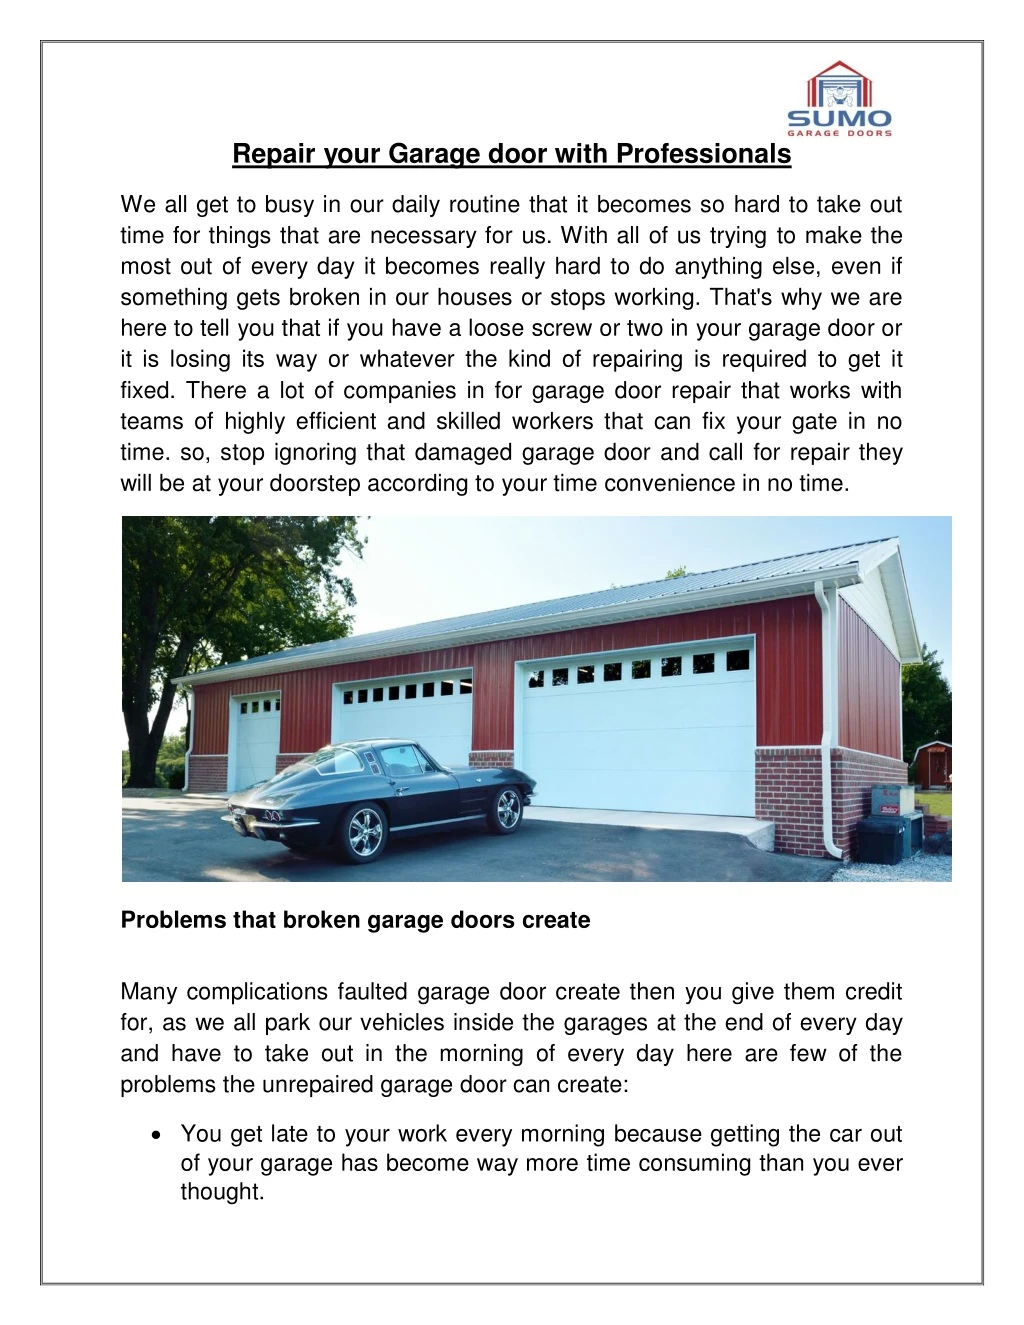 repair your garage door with professionals